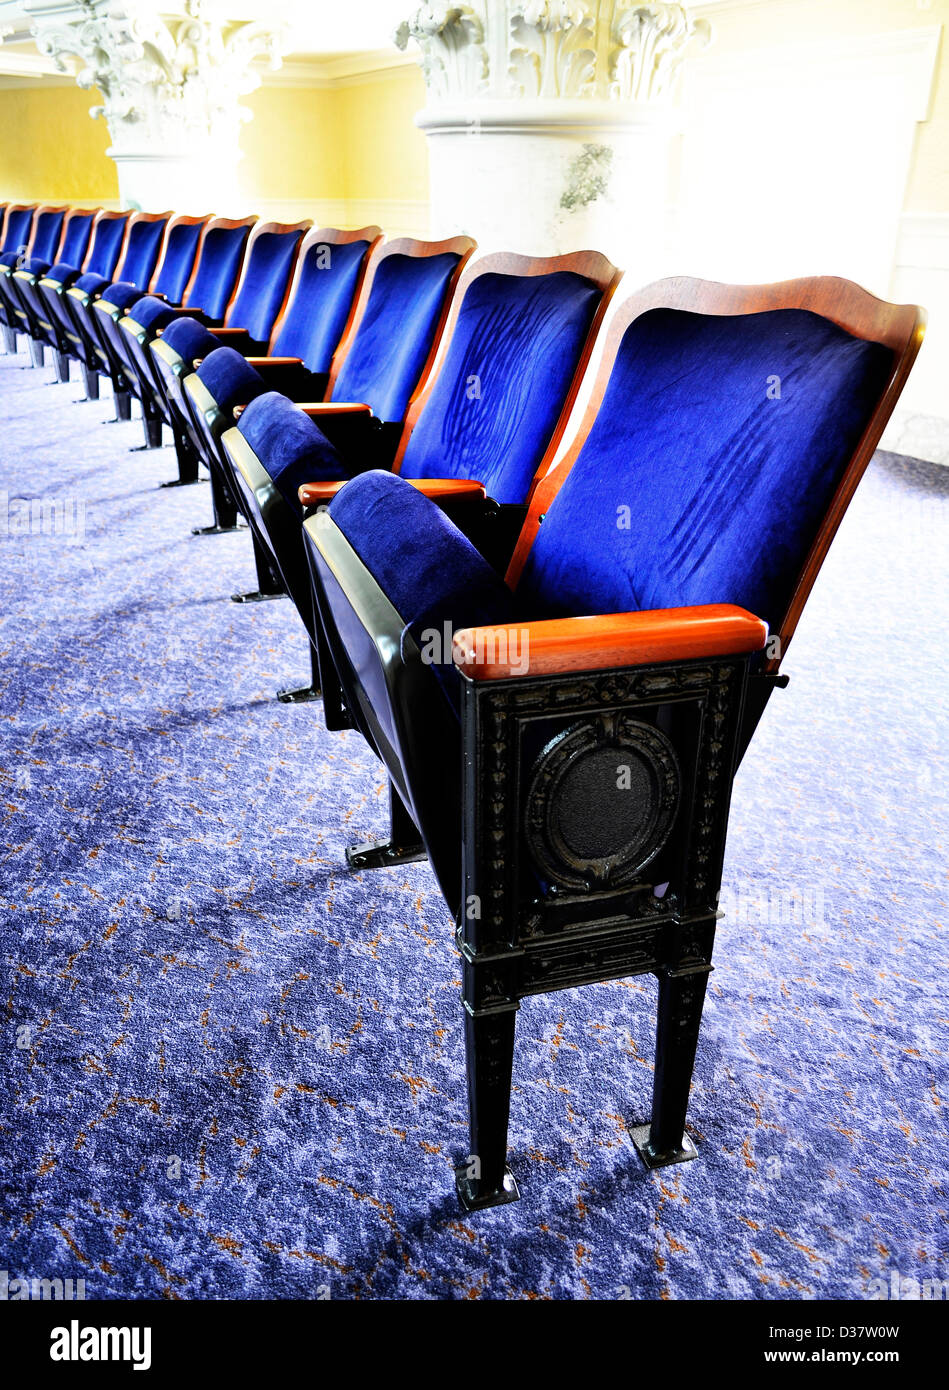 Row of elegant velvet theater seats Stock Photo